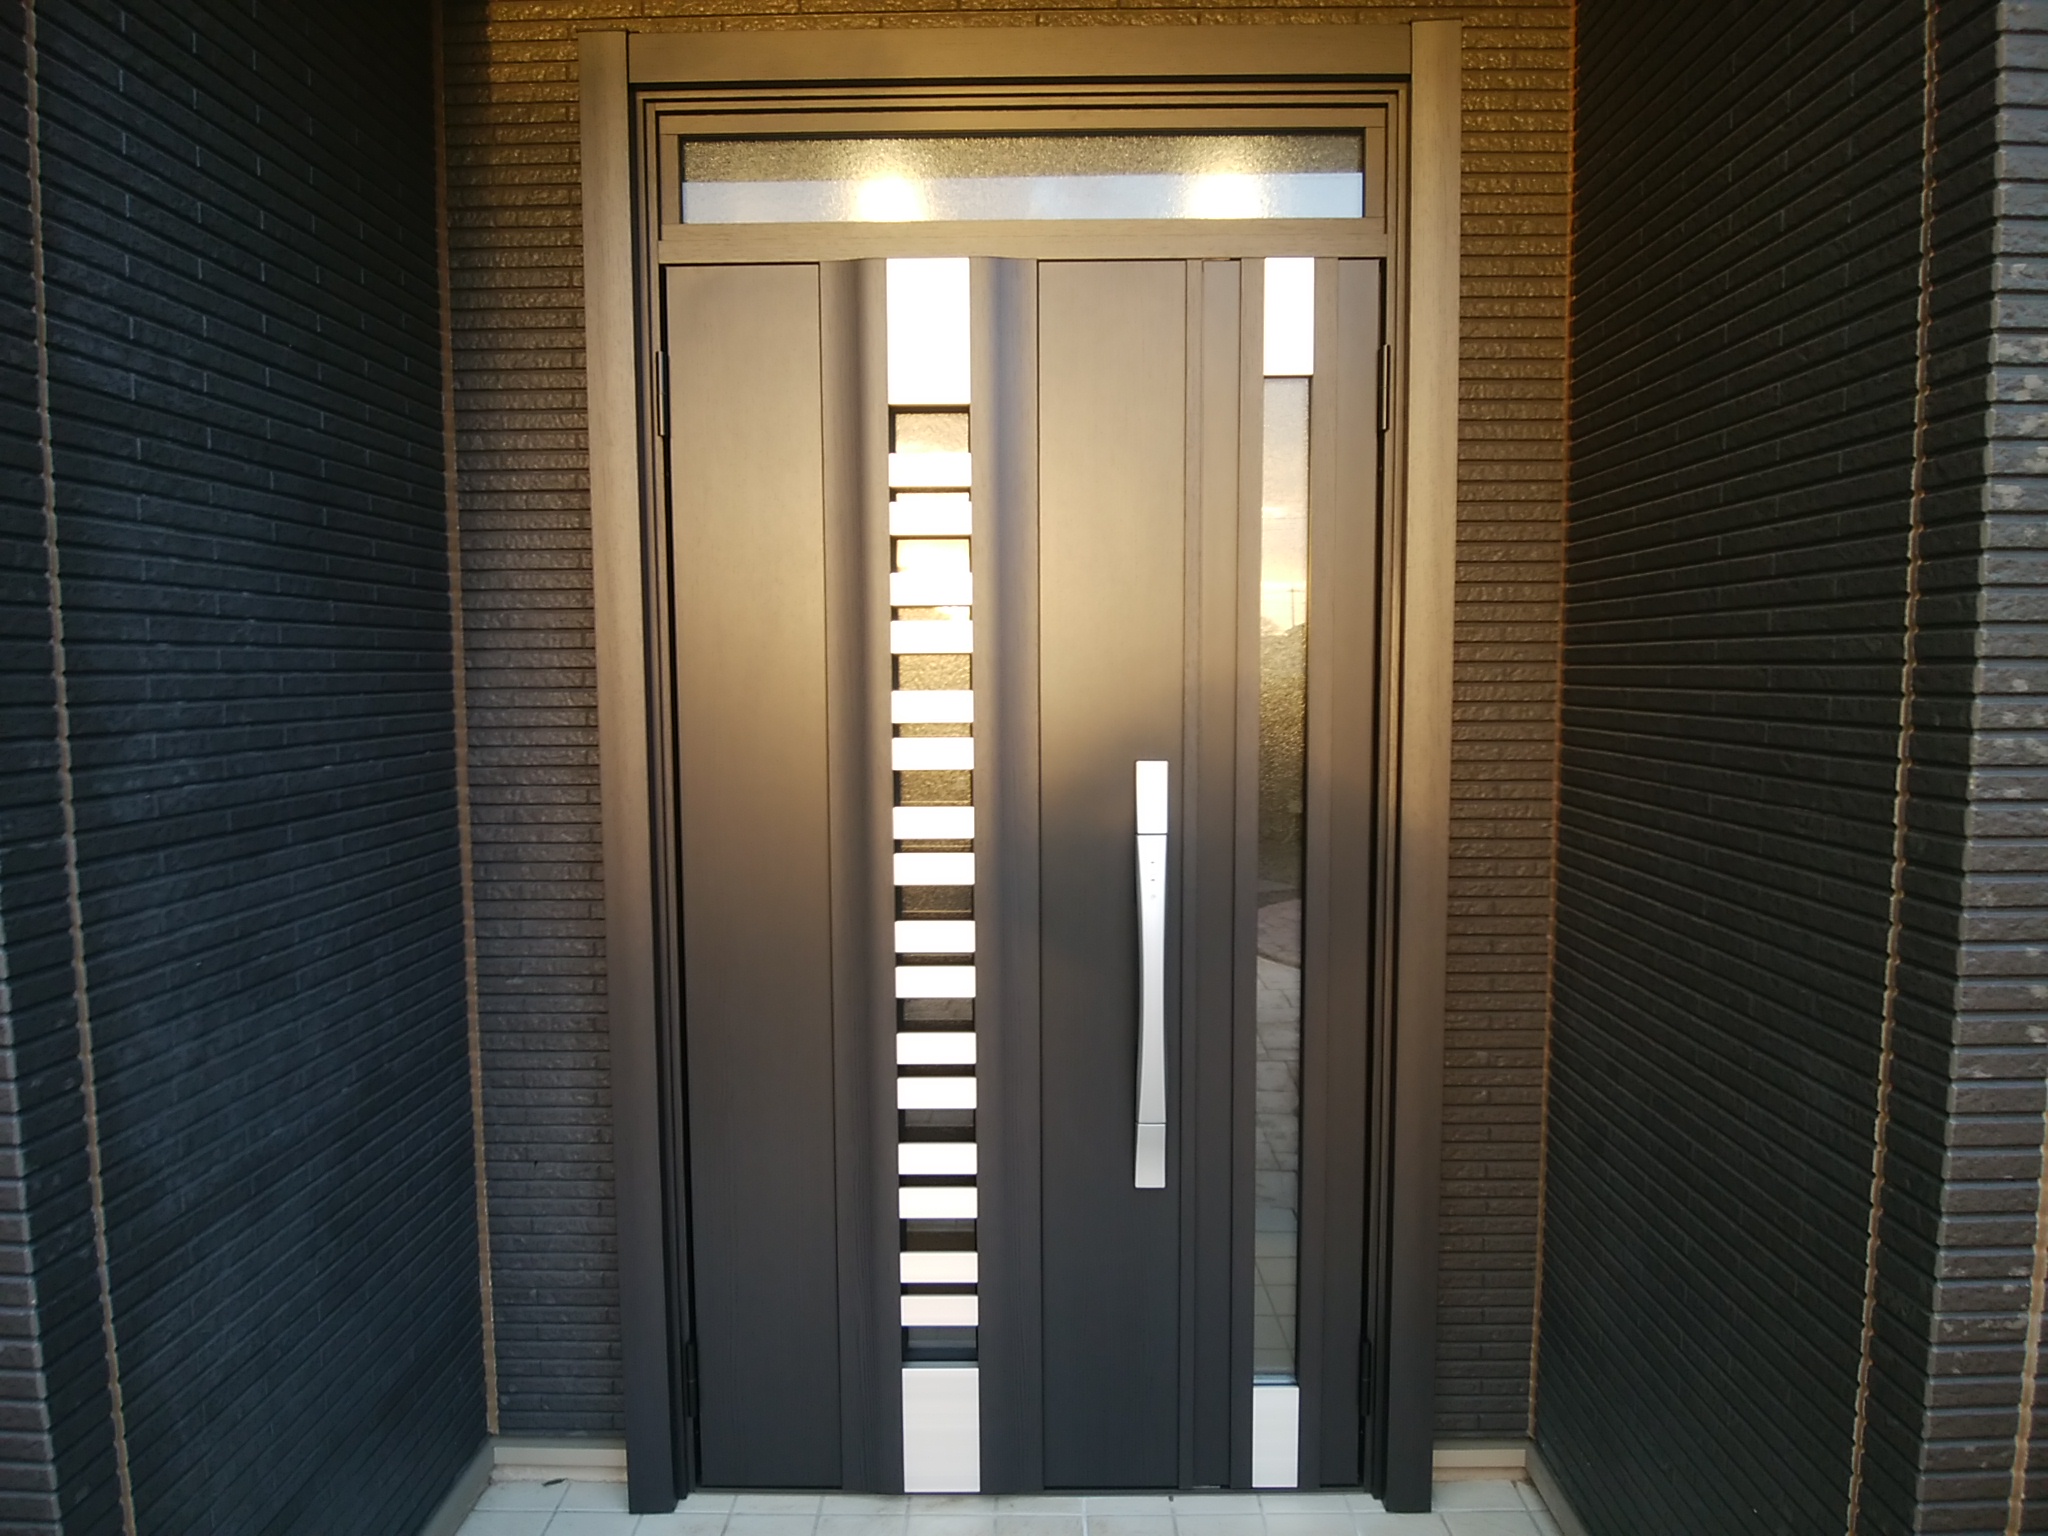 昼間でも電気を点けないと暗いドアを明るくしました 茨城県つくば市の工事事例 Lixilリシェントg型 玄関ドアのリフォームなら玄関 ドアマイスターへお任せください